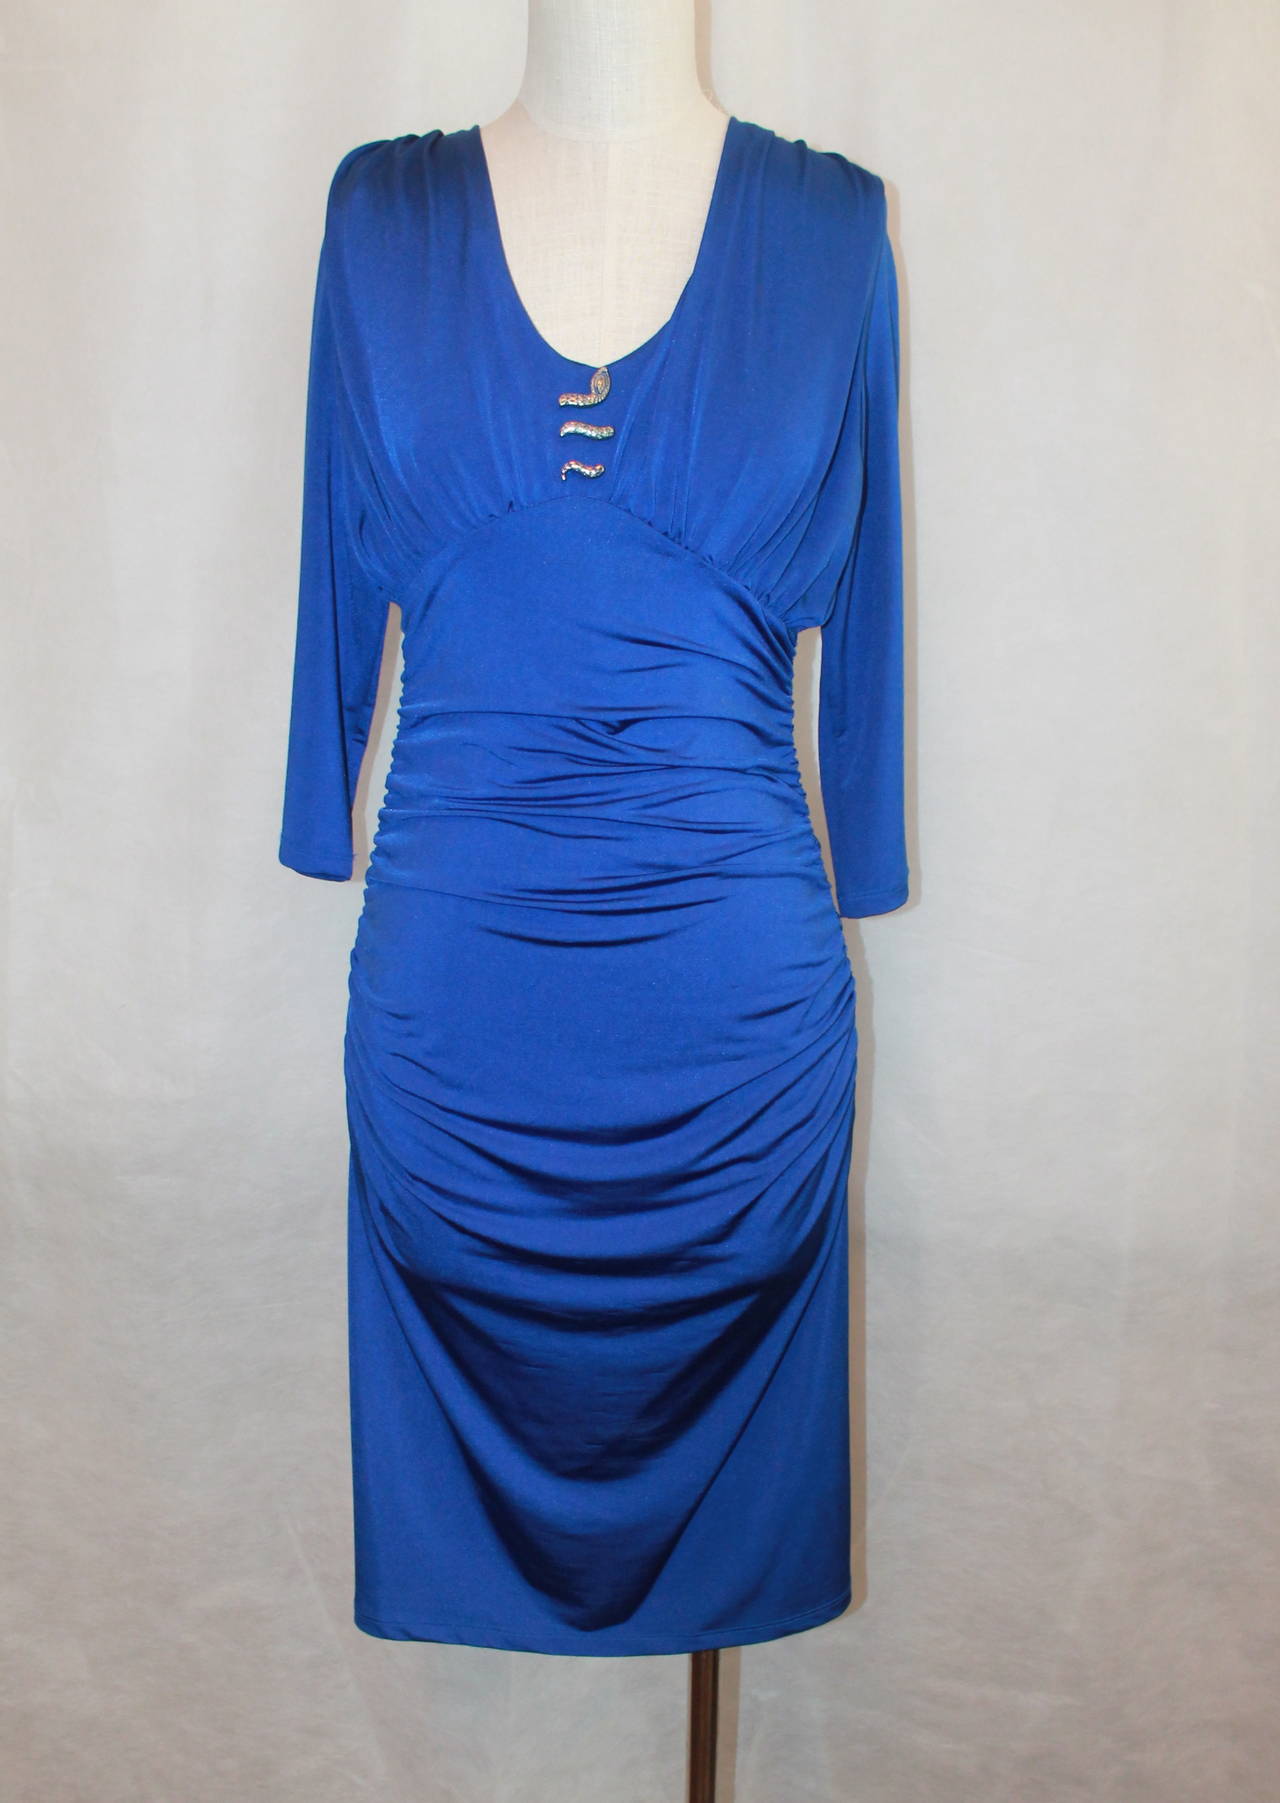 Roberto Cavalli Royal Blue Jersey Ruching 3/4 Sleeve Dress - S - NWT. Cette robe est en très bon état, avec une petite déchirure sur le devant/milieu (image 5). Il y a des ruchings sur les côtés de la robe et un ruching principal au milieu du dos.